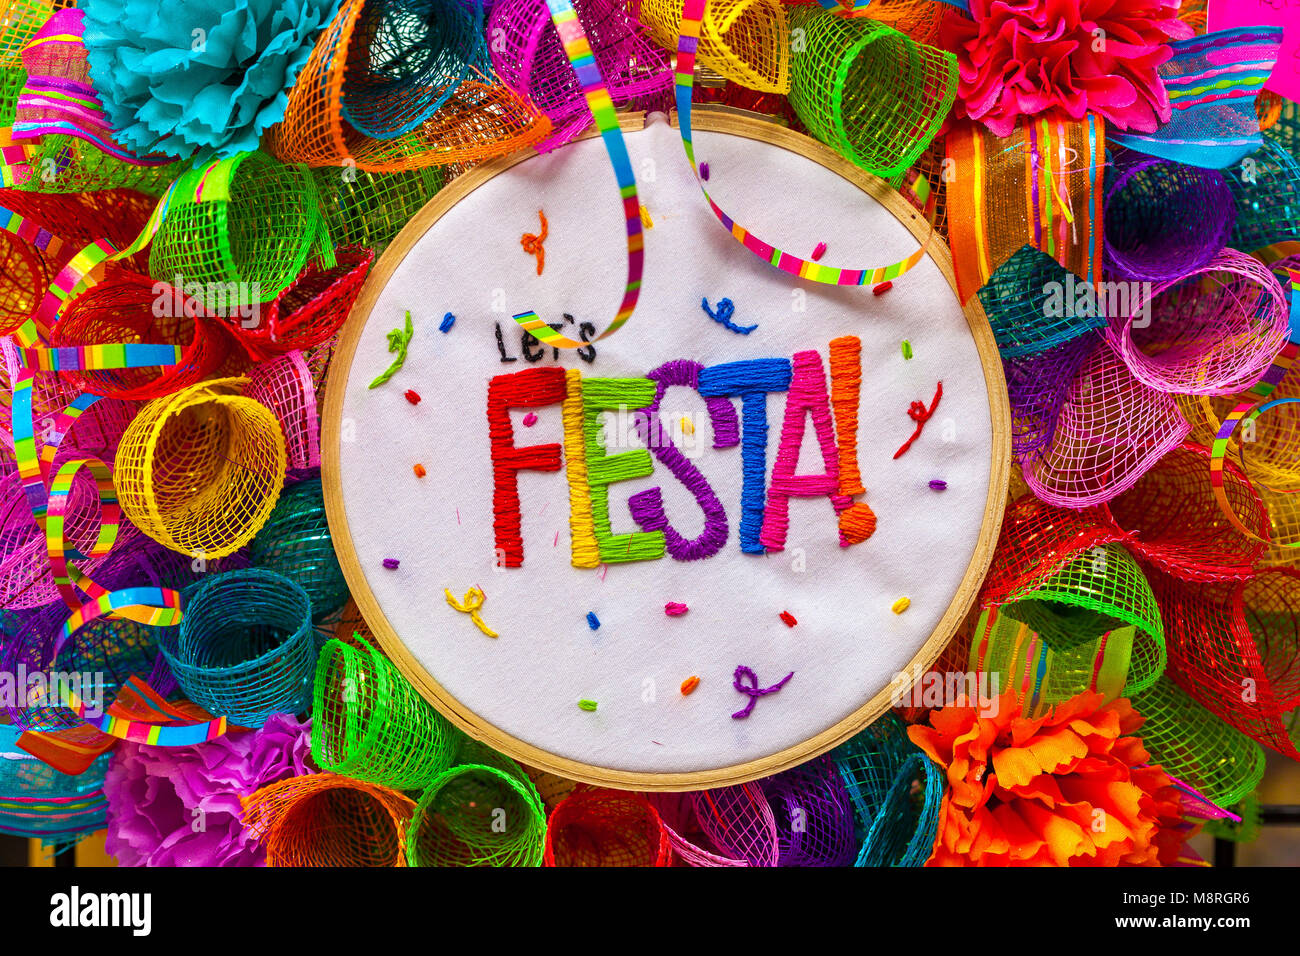 Le mot 'Fiesta' cousues en lettres colorées sur mash multicolores décorés de paillettes et de fleurs en papier Banque D'Images